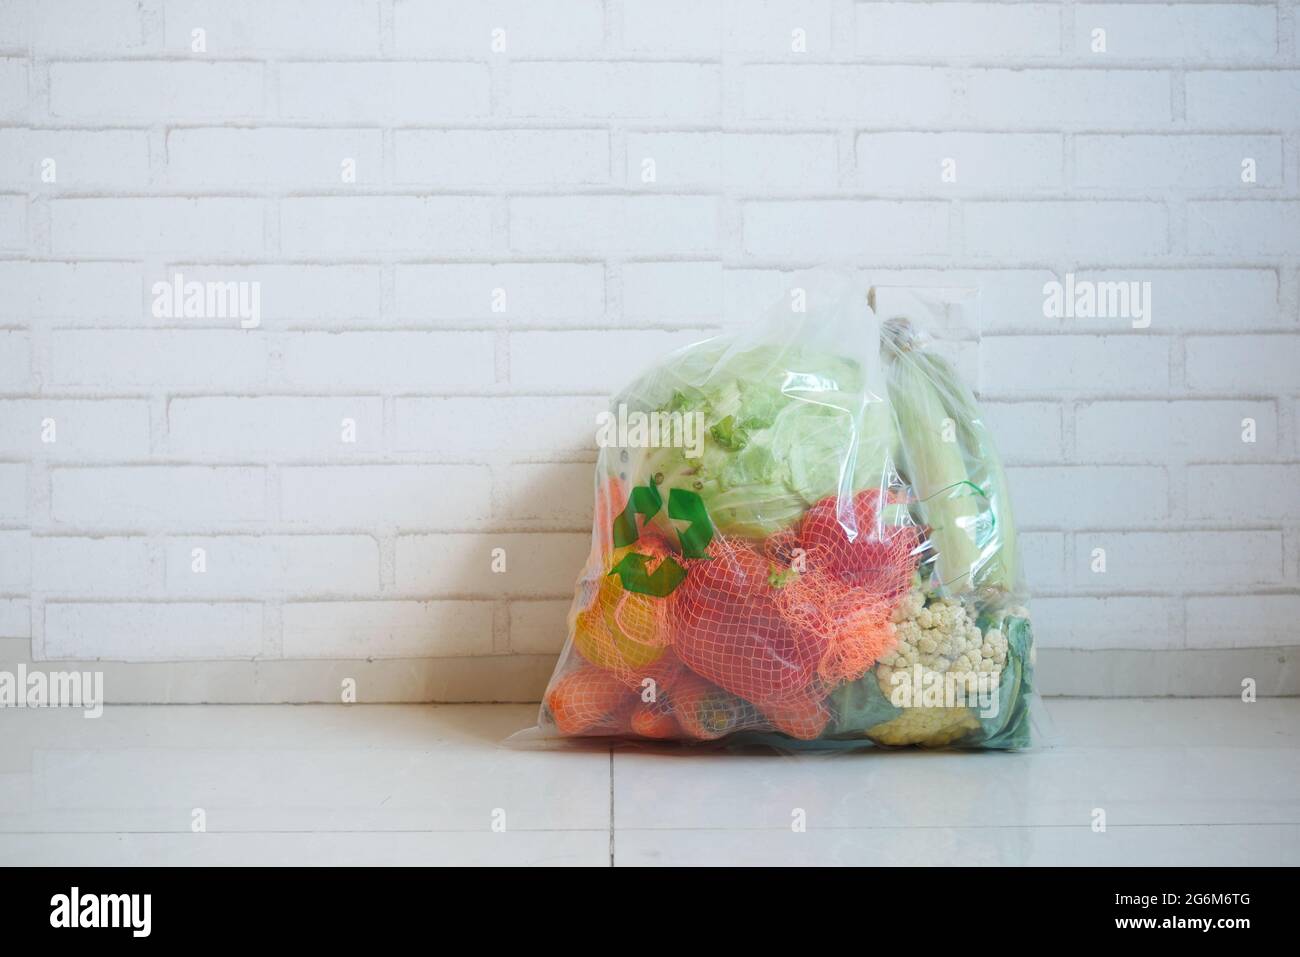 Recycelte Pfeile auf einer Einkaufstasche mit Gemüse auf einem Boden Stockfoto